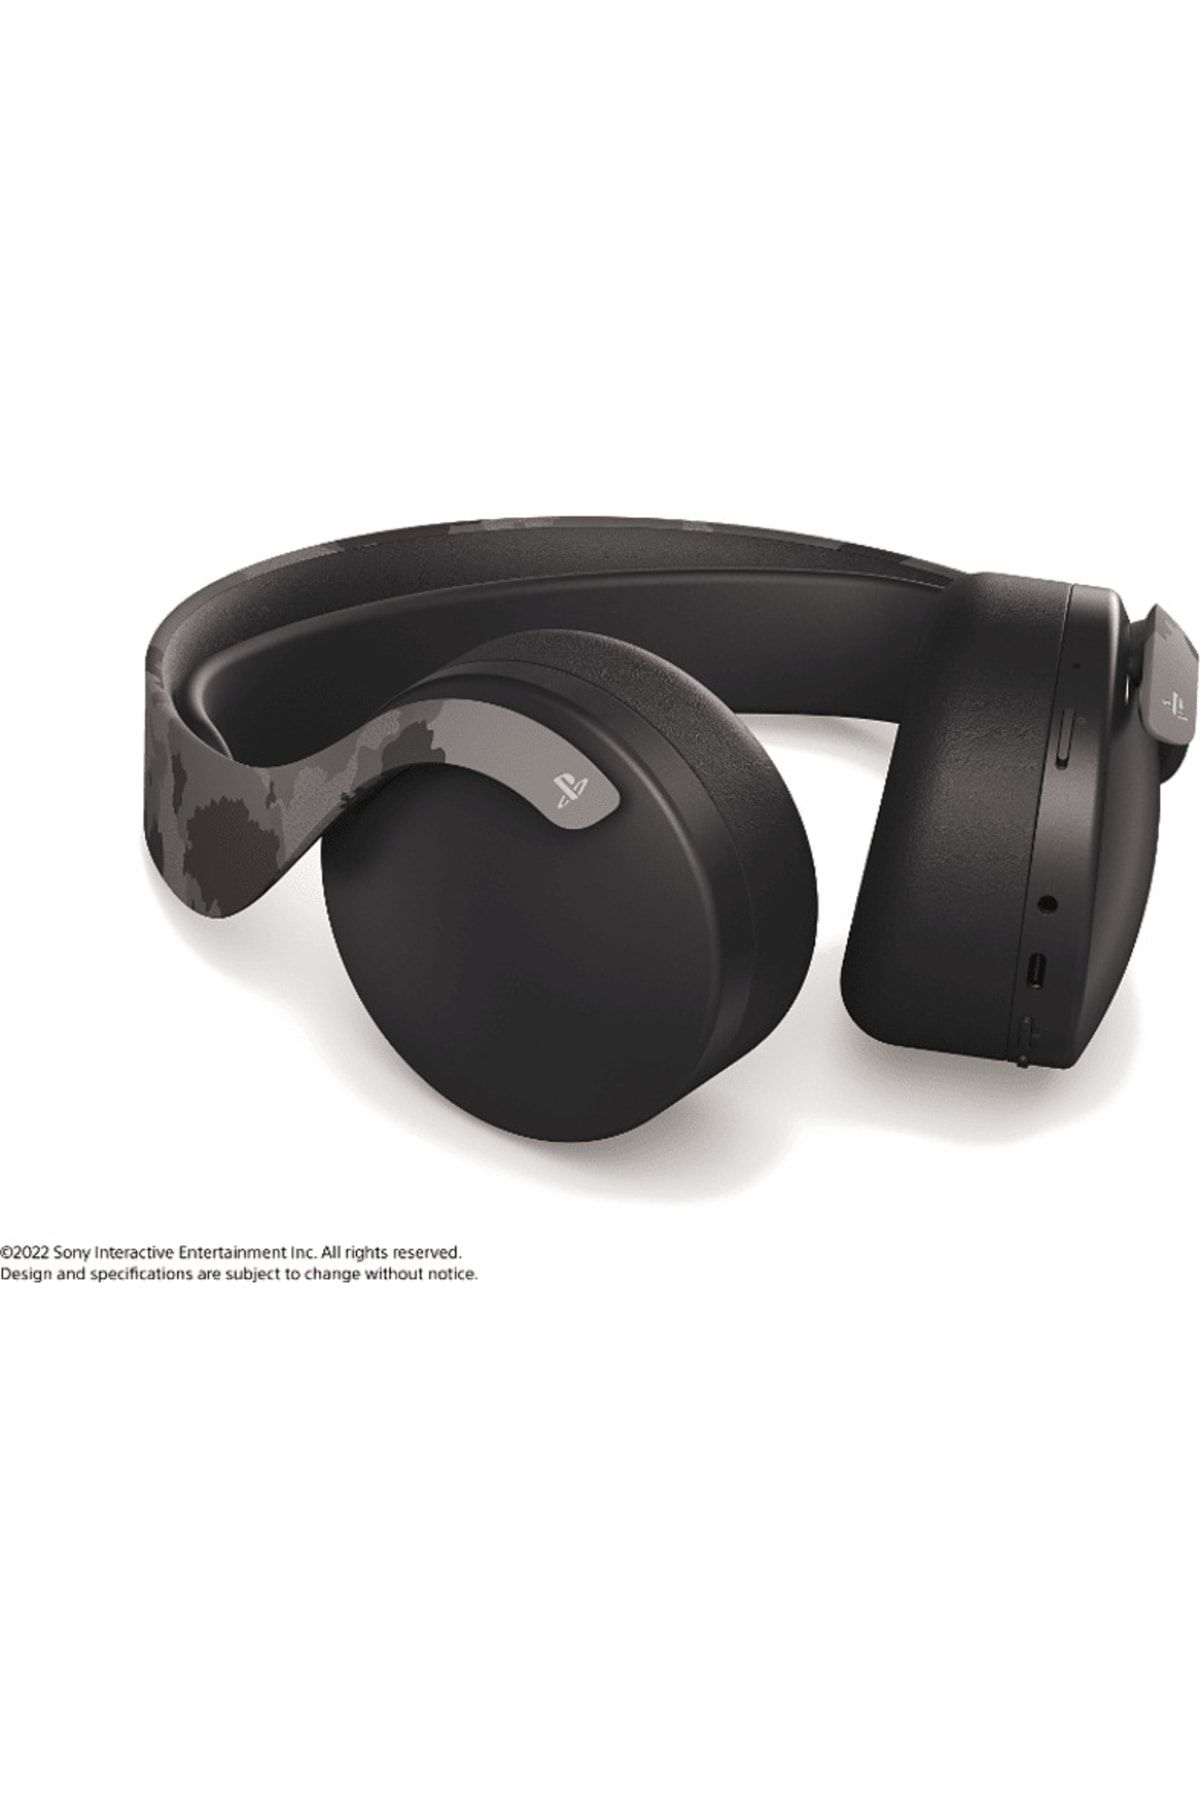 Sony Pulse 3d Kablosuz Kulak Üstü Oyuncu Kulakllığı Gri Kamuflaj